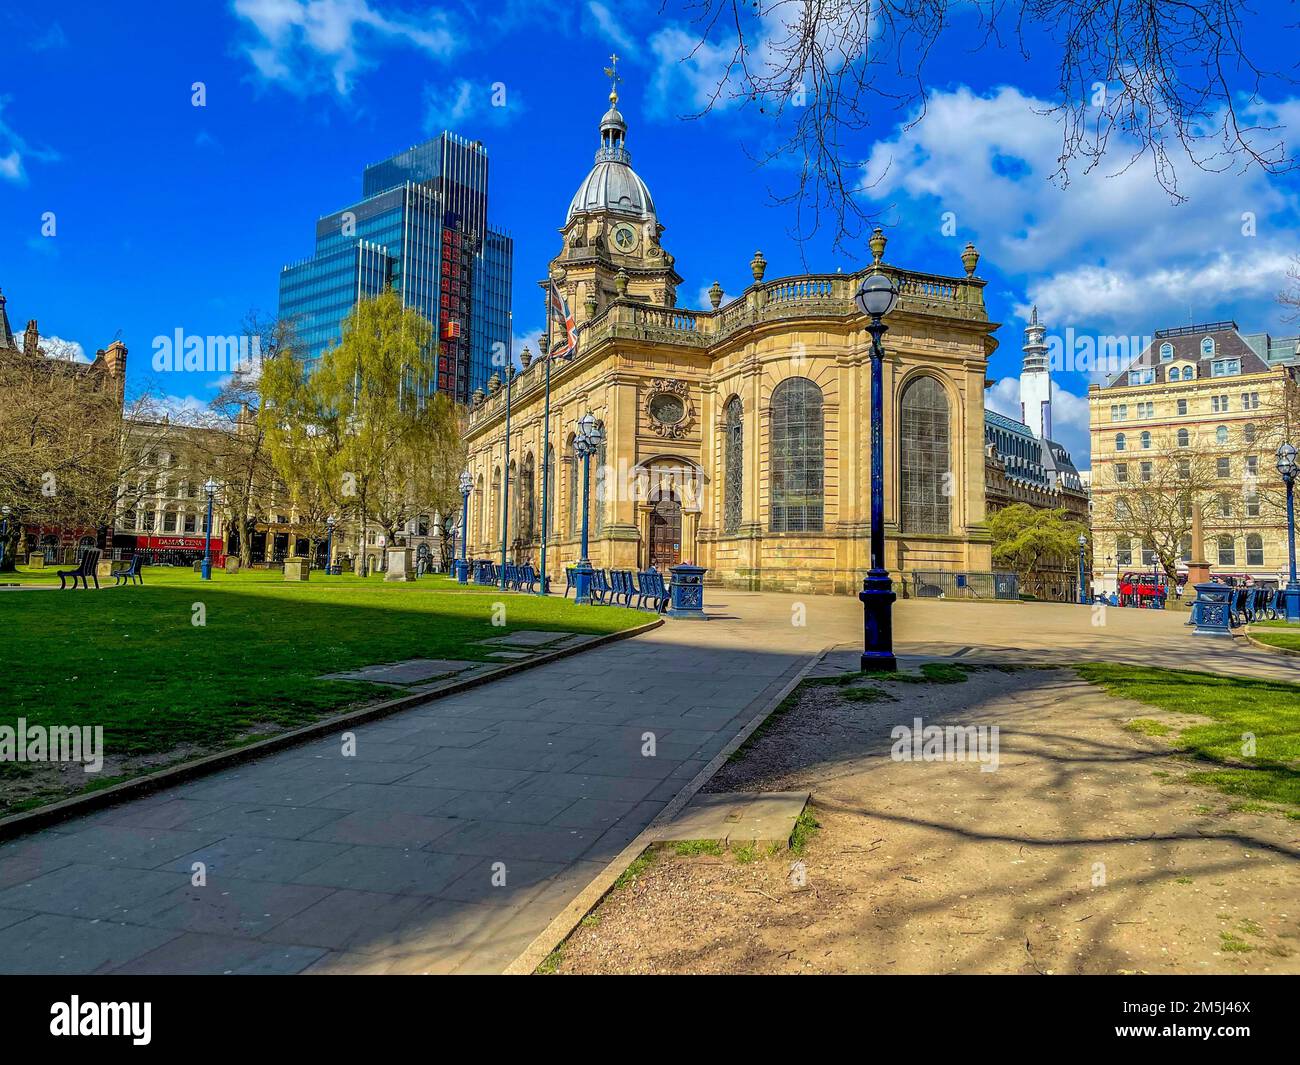 Der Blick auf St. Philip's Cathedral in Birmingham, England, Großbritannien. Stockfoto